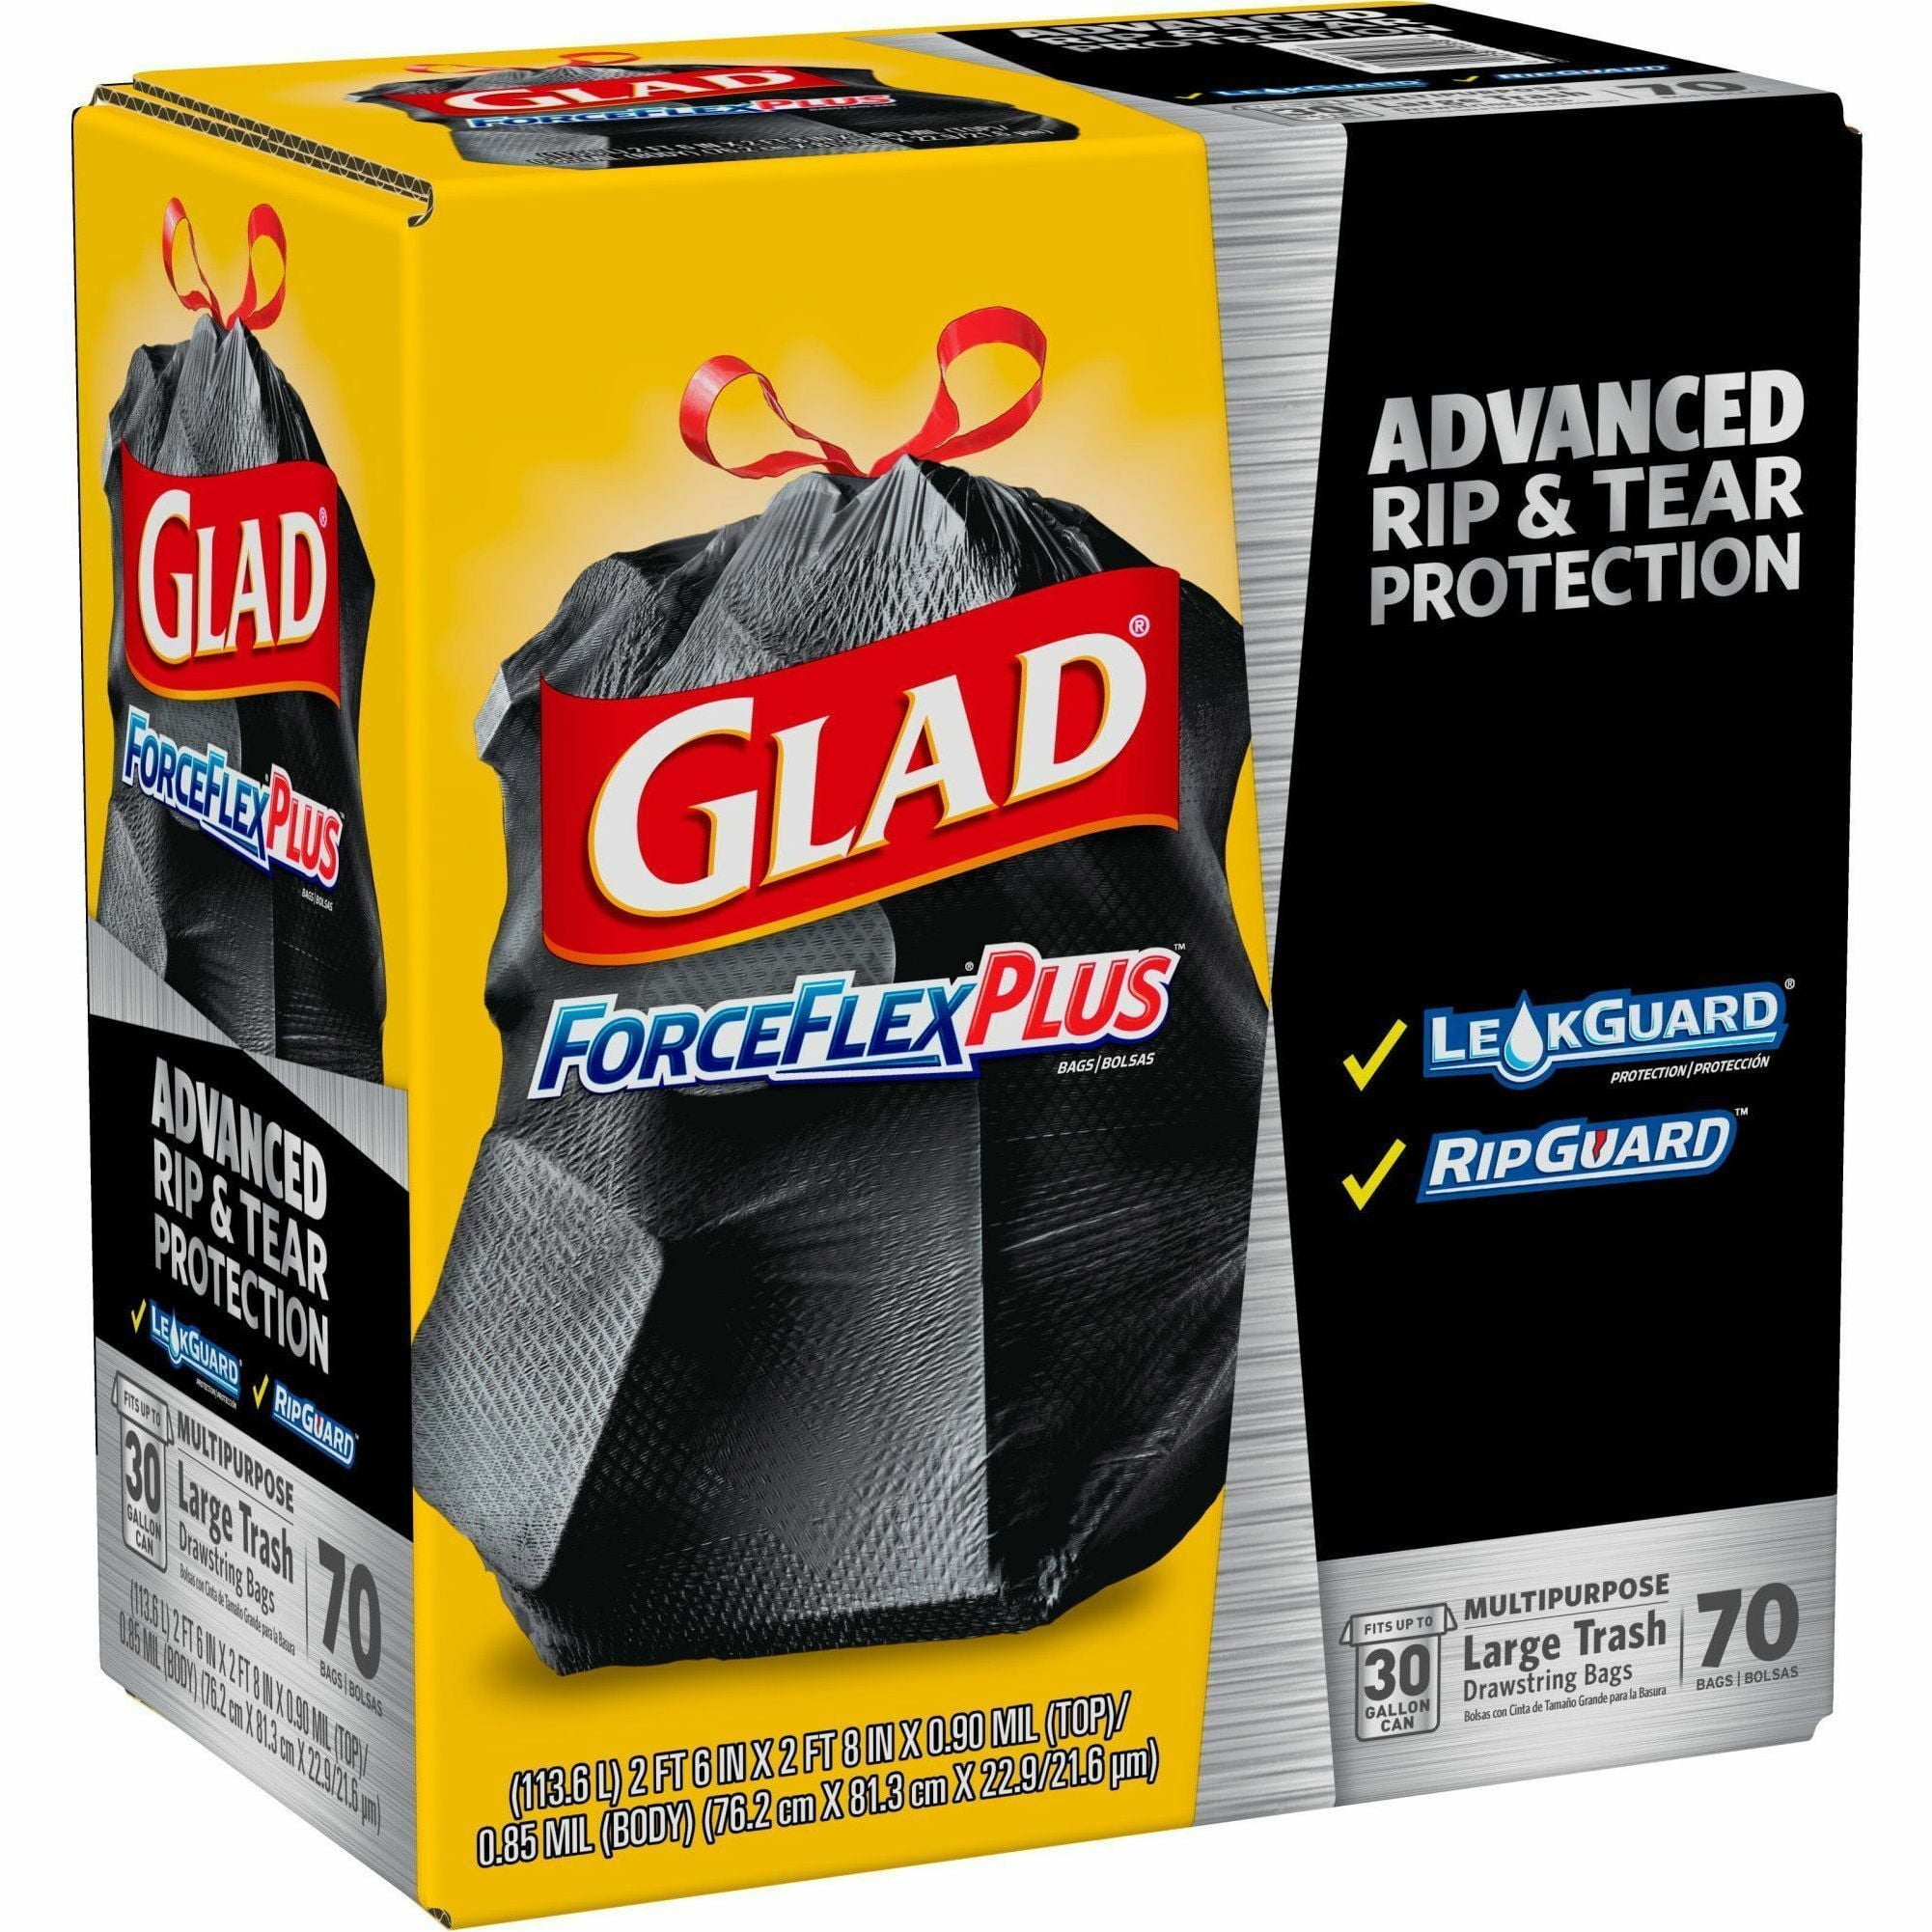 Glad® Guaranteed Strong Large Drawstring Trash Bags, 30 Gallon, 15 Count, Shop